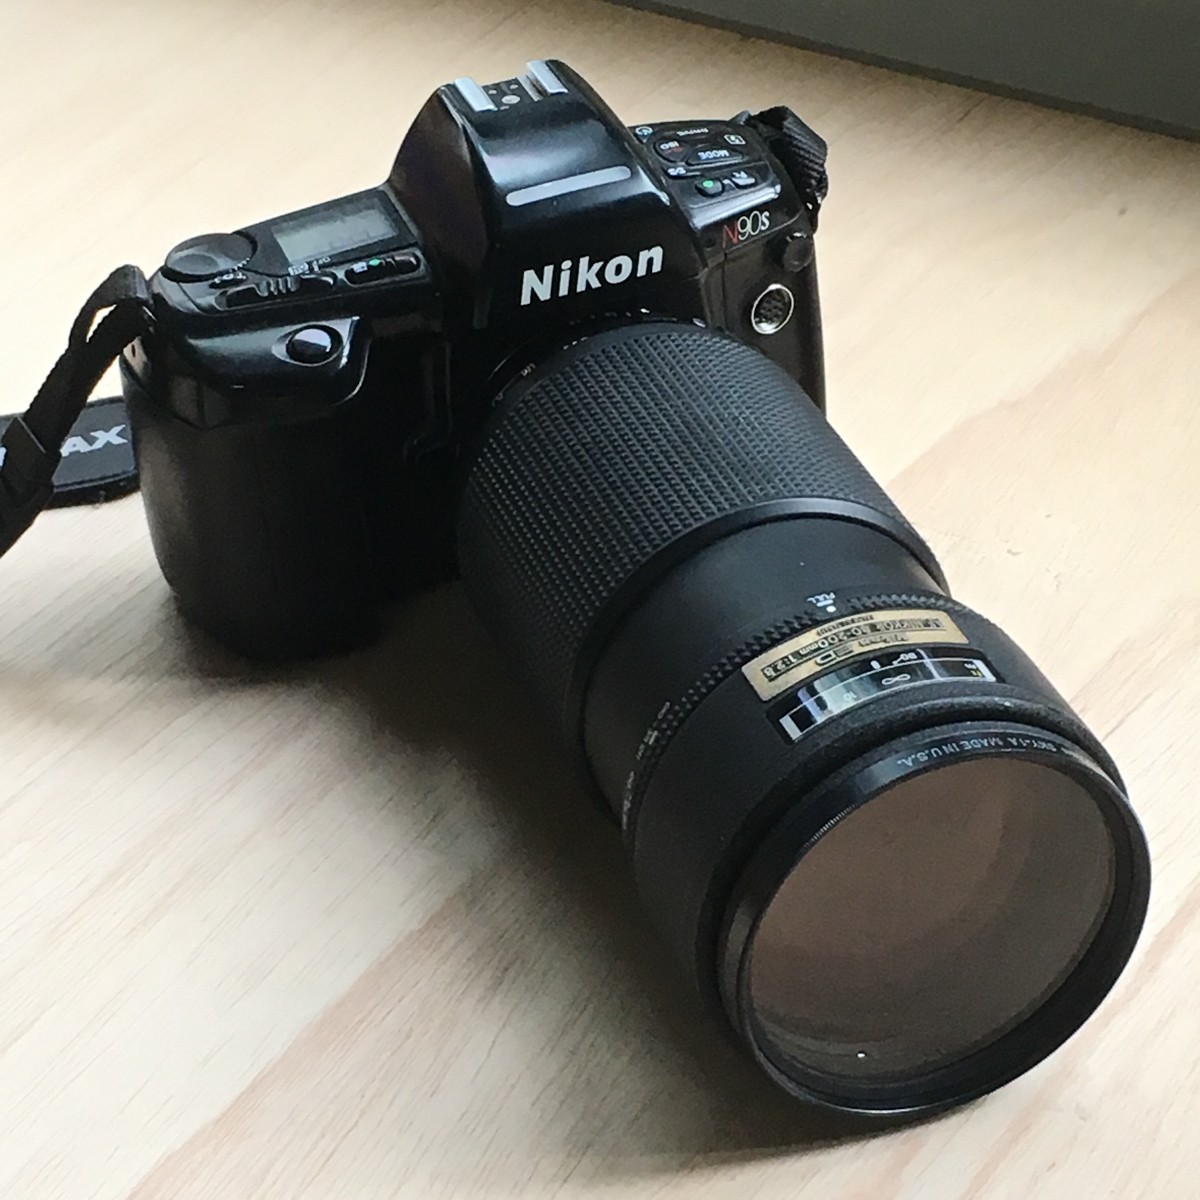 Nikon N90S and Nikon 80-200mm f/2.8 AF lens